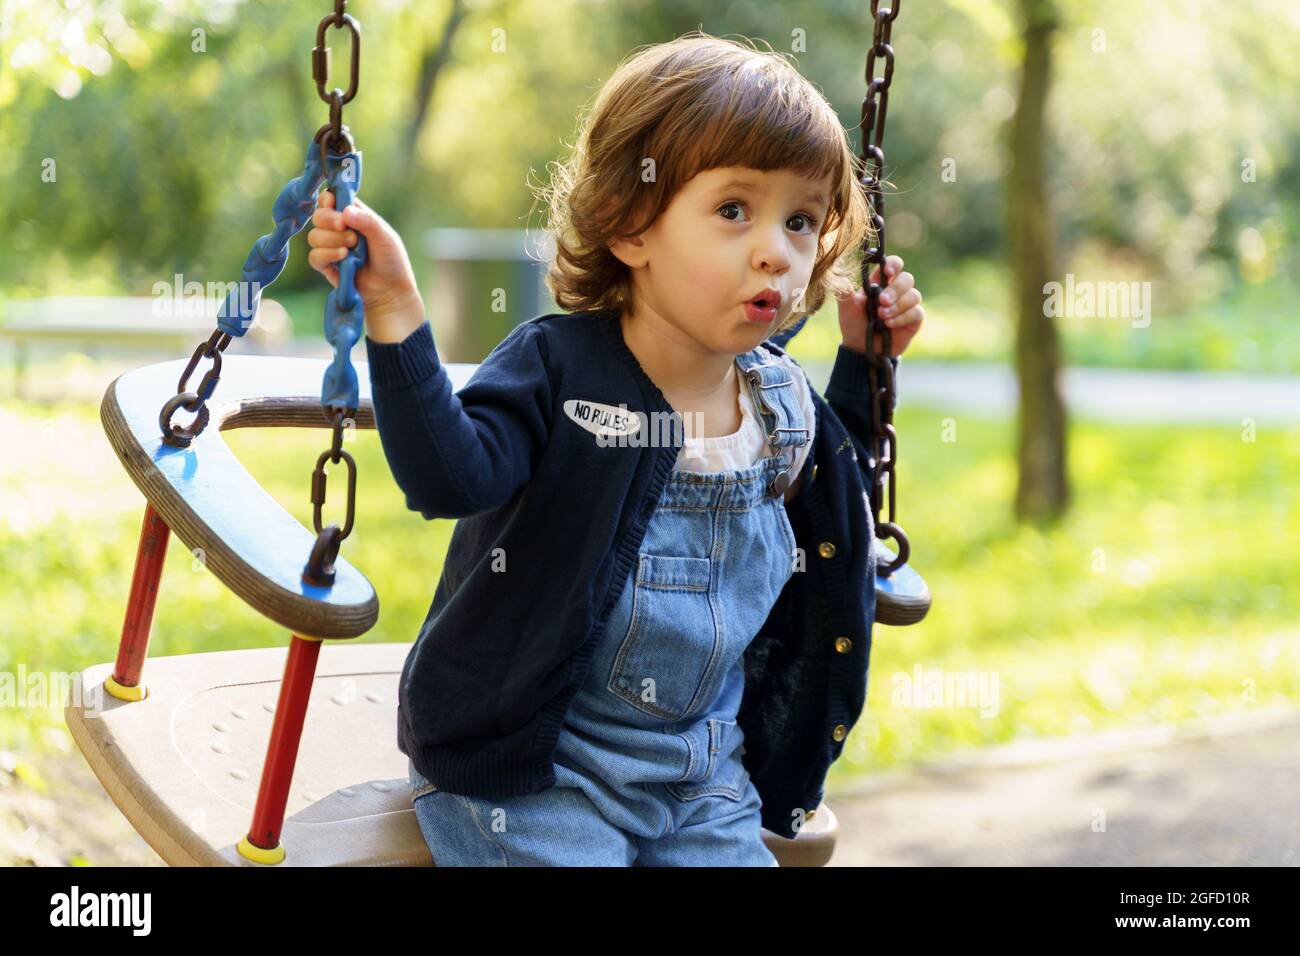 Süße kleine Kleinkind Mädchen in blauen Jeans spielen auf Schaukel im Park  im Freien Stockfotografie - Alamy